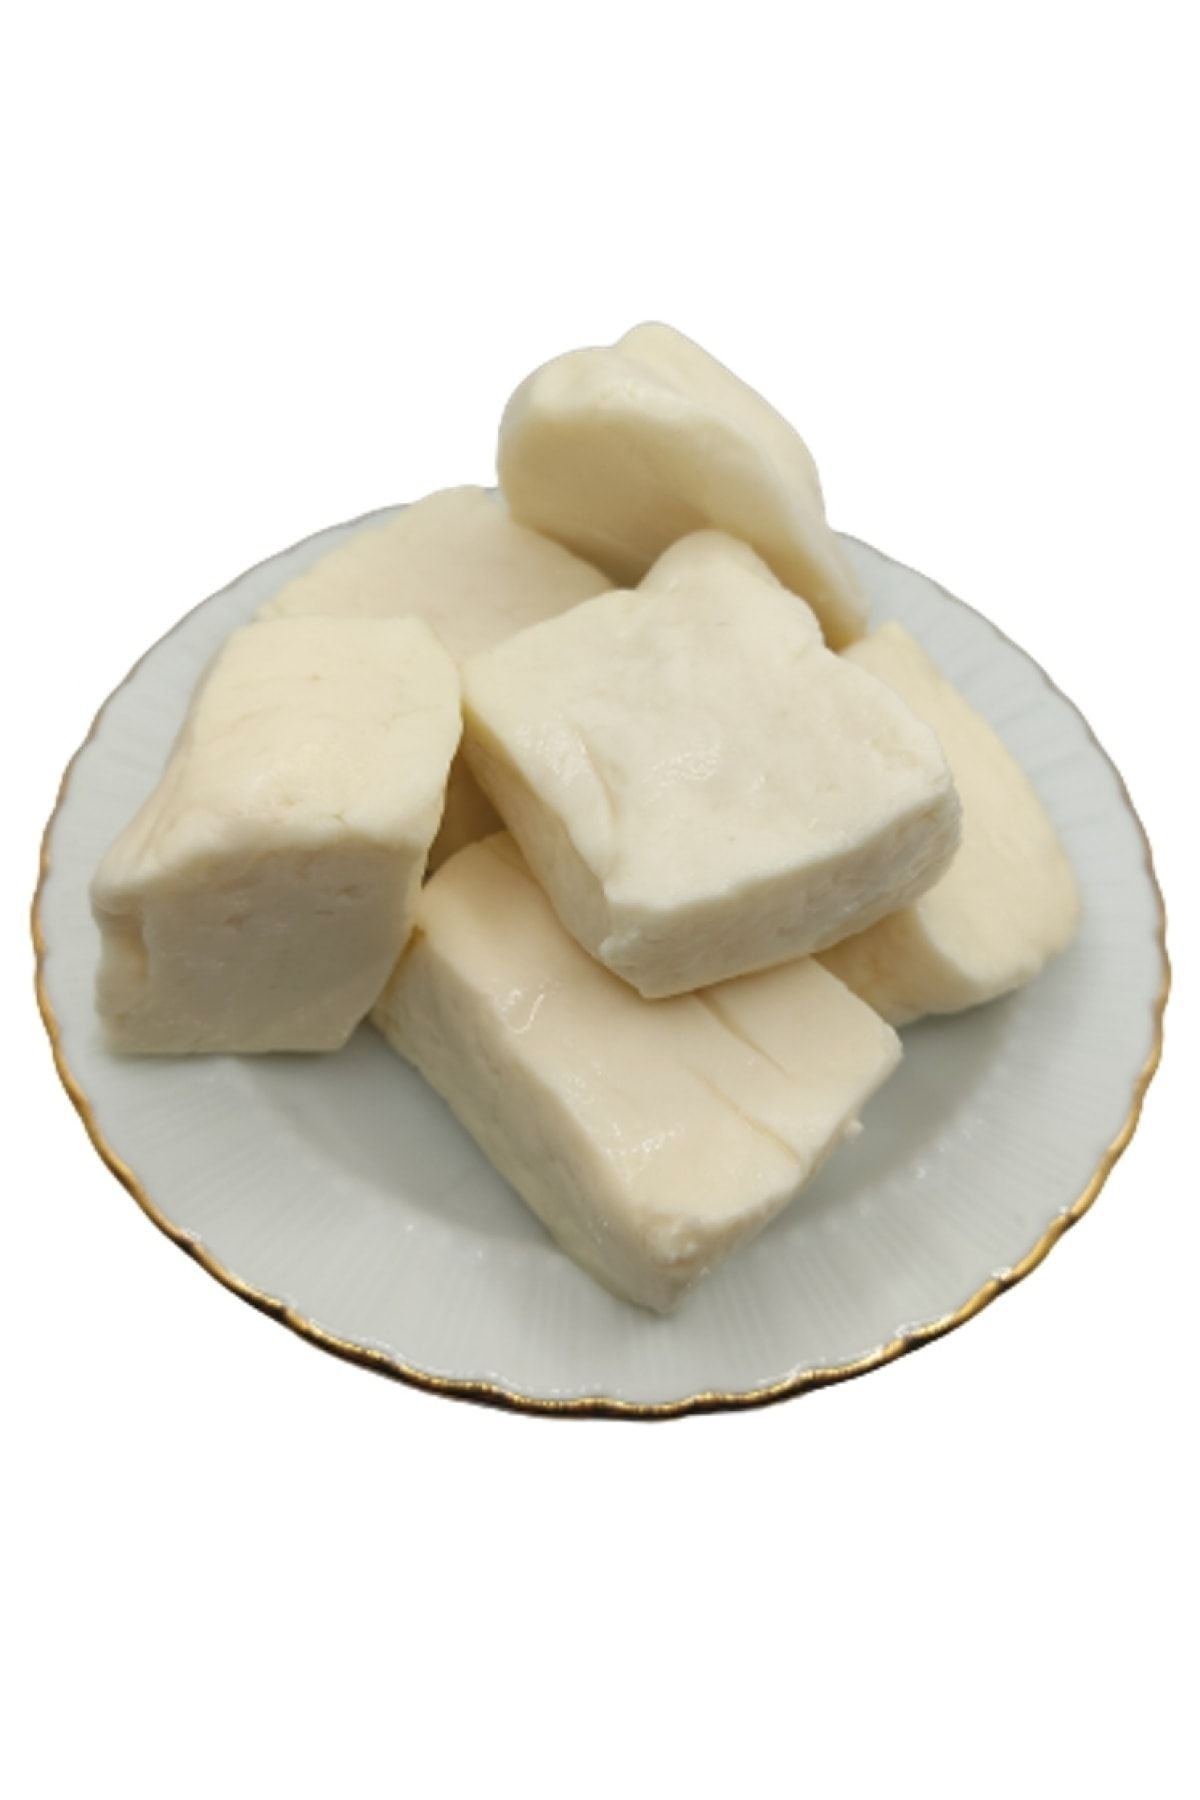 bakkal hasan Tam Yağlı Antep Peyniri (koyun Peyniri) 1 Kg -